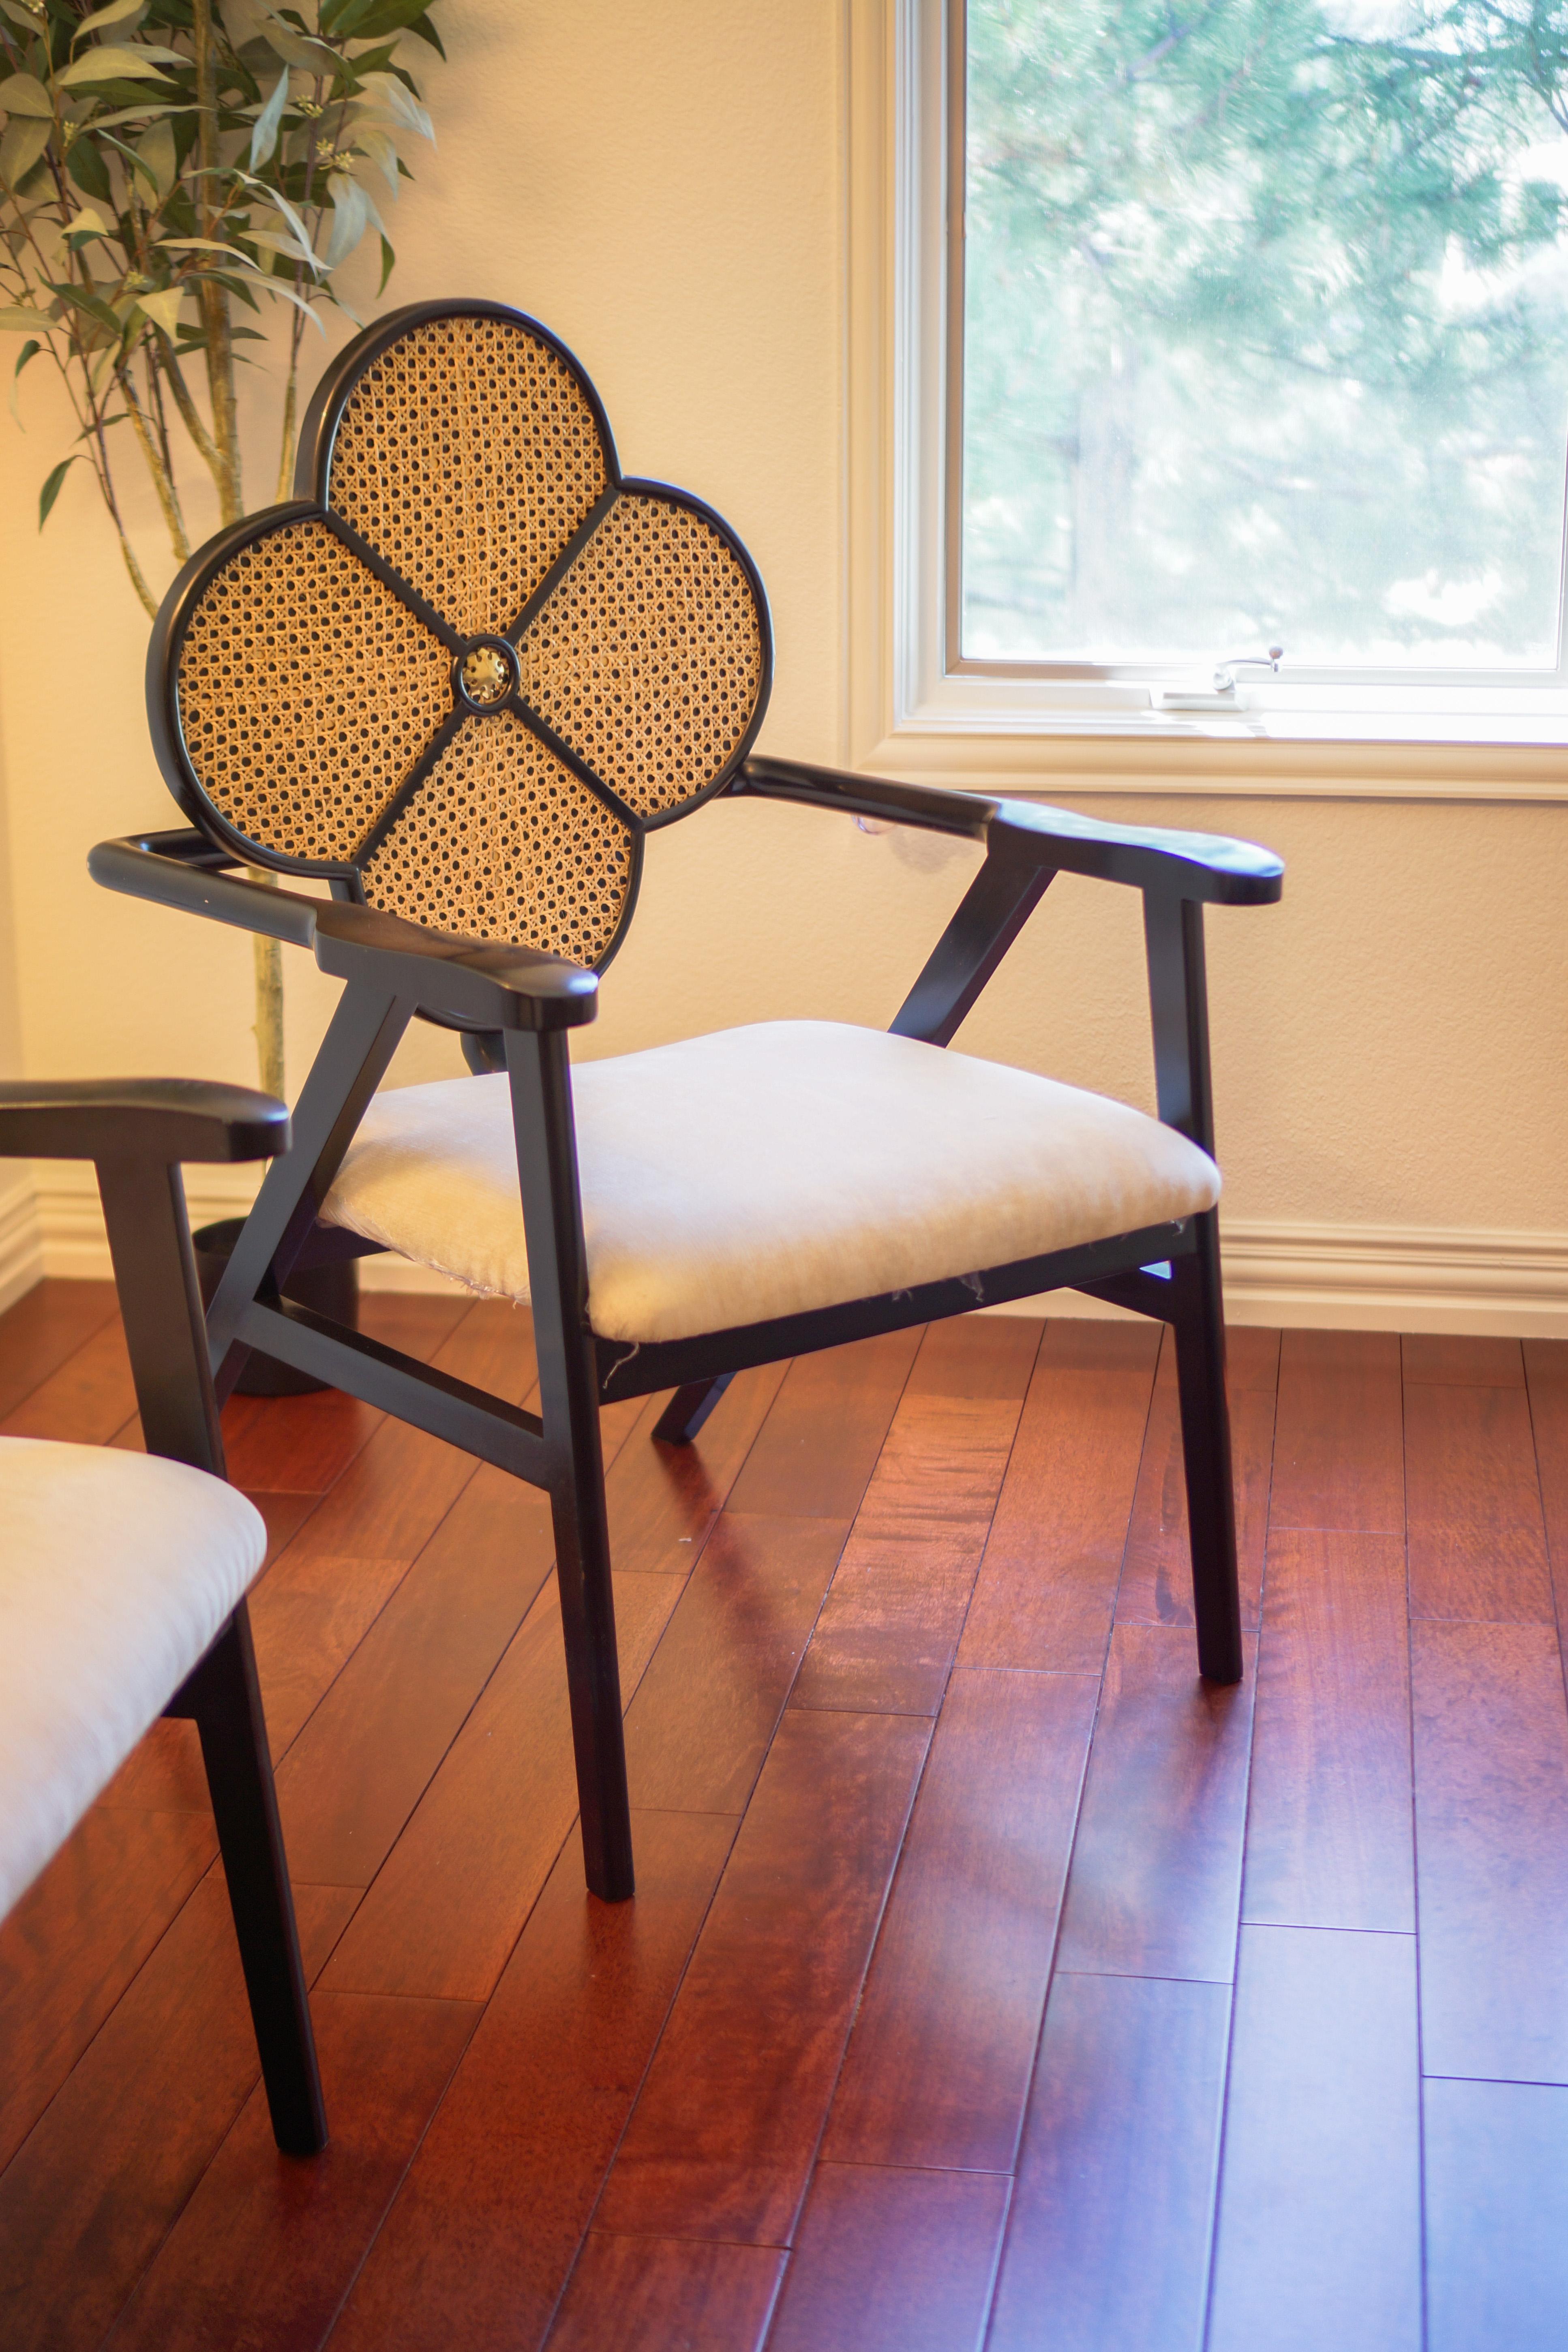 Erhöhen Sie Ihren Raum mit Jugendstileleganz: Der Fleur-Stuhl

Tauchen Sie mit dem Fleur Chair in die opulente Welt des Jugendstils ein - ein wahres Meisterwerk, bei dem die Anmut der Natur auf zeitloses Design trifft. Dieser handgefertigte Stuhl